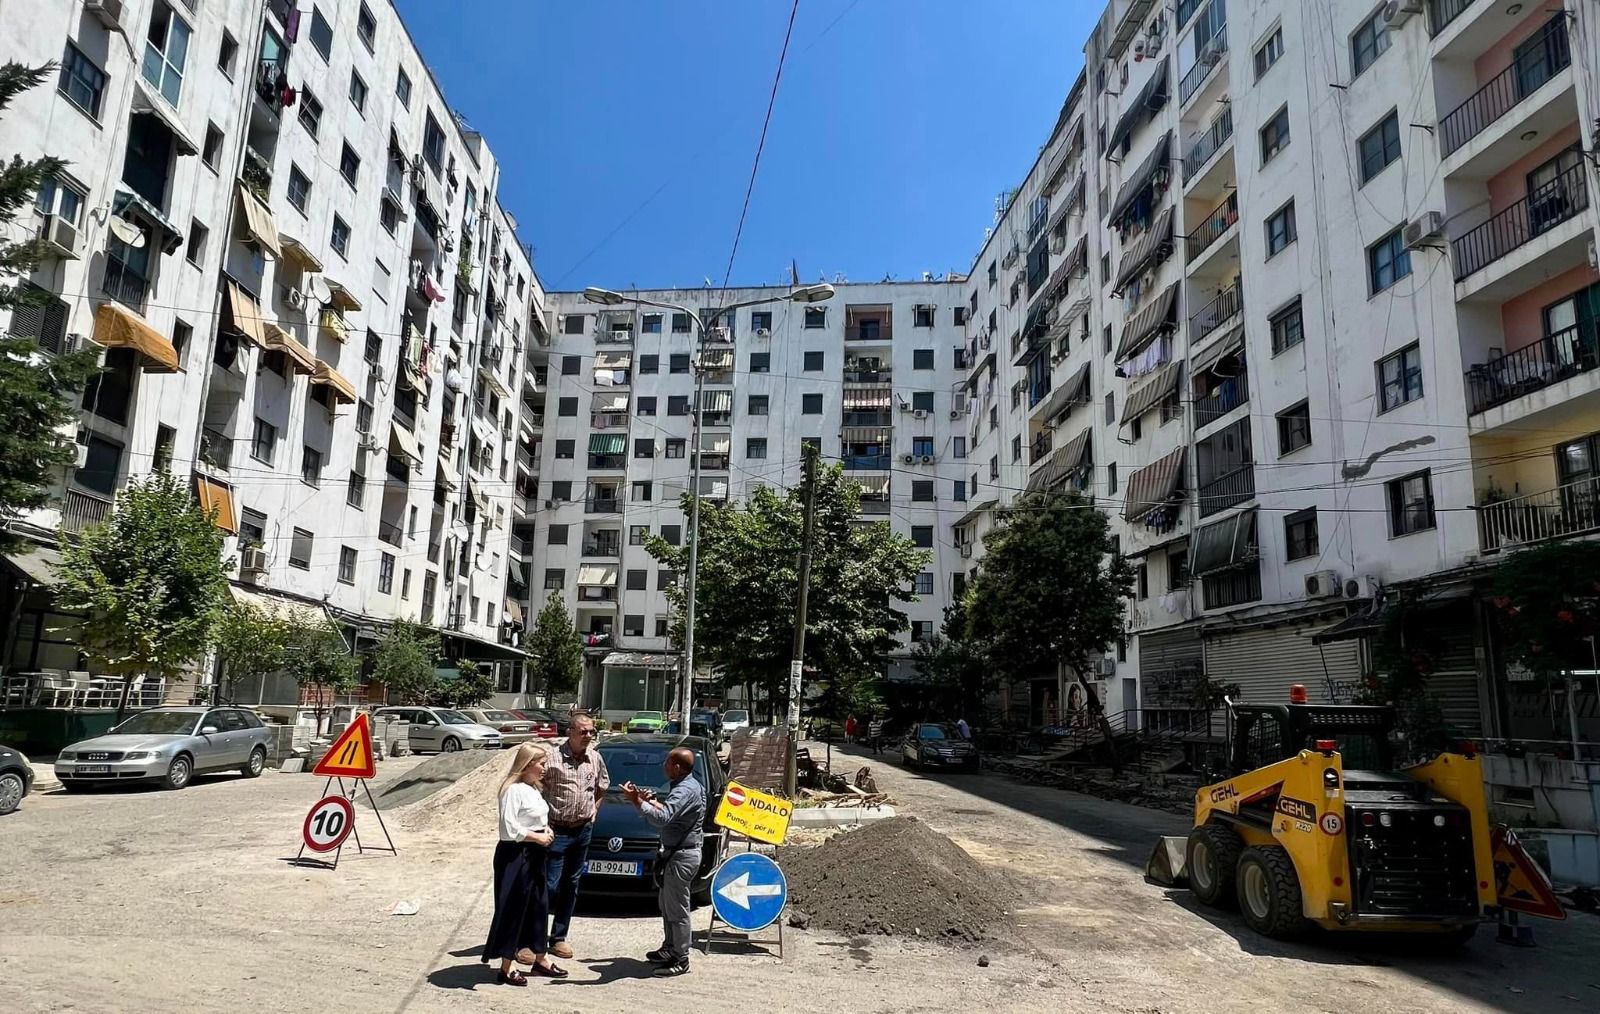 Bashkia e Tiranës punime për rehabilitimin e bllokut të banimit në njësinë 4